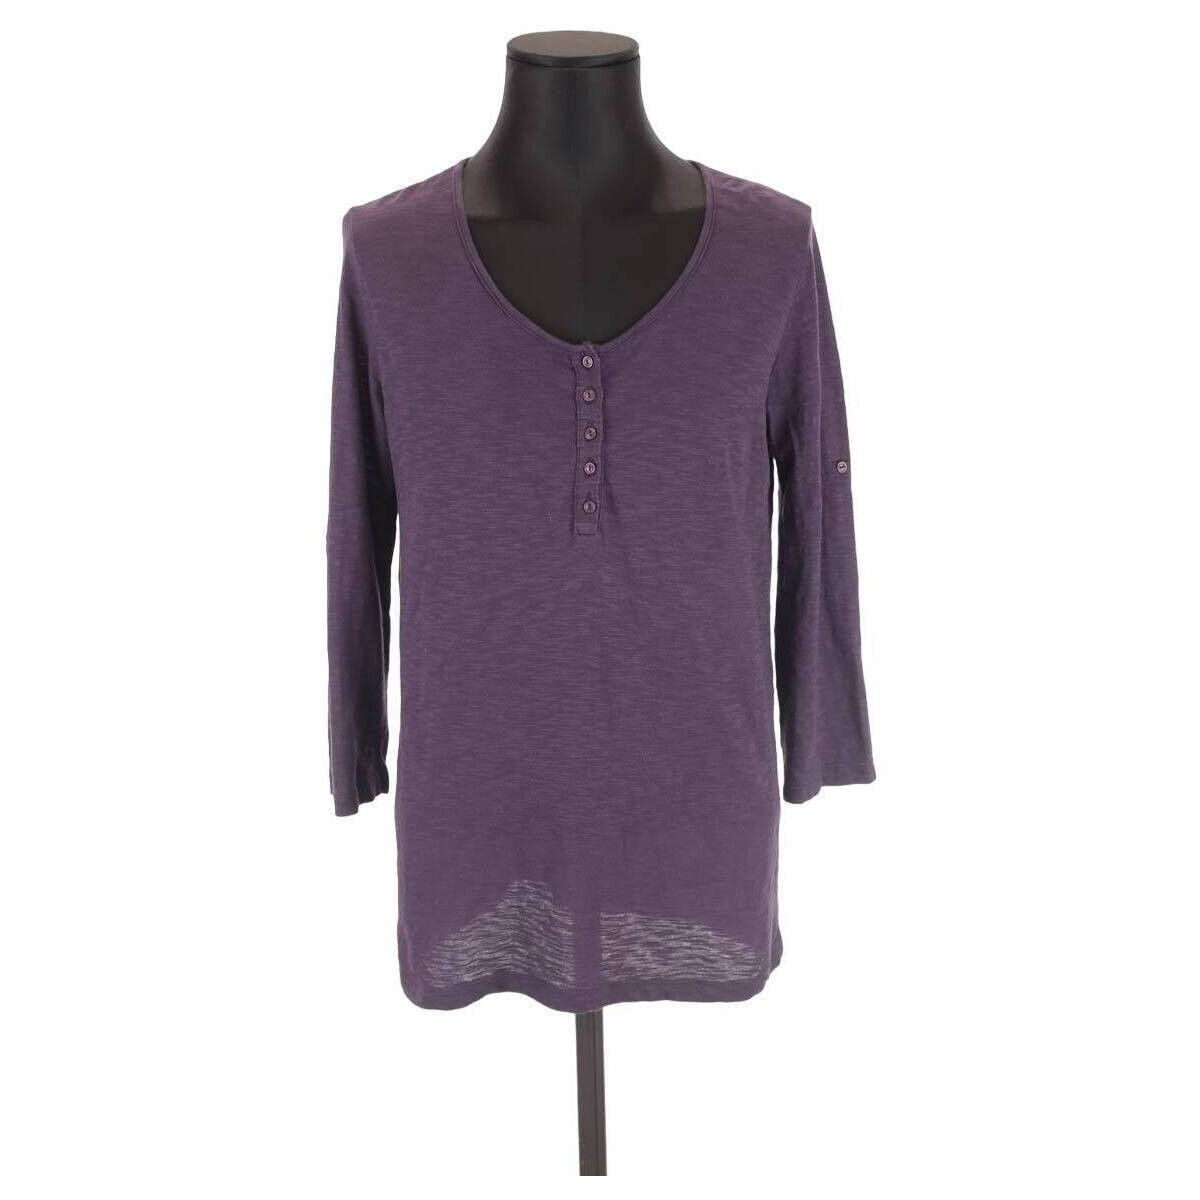 Vêtements Femme Débardeurs / T-shirts sans manche Gerard Darel Top en coton Violet